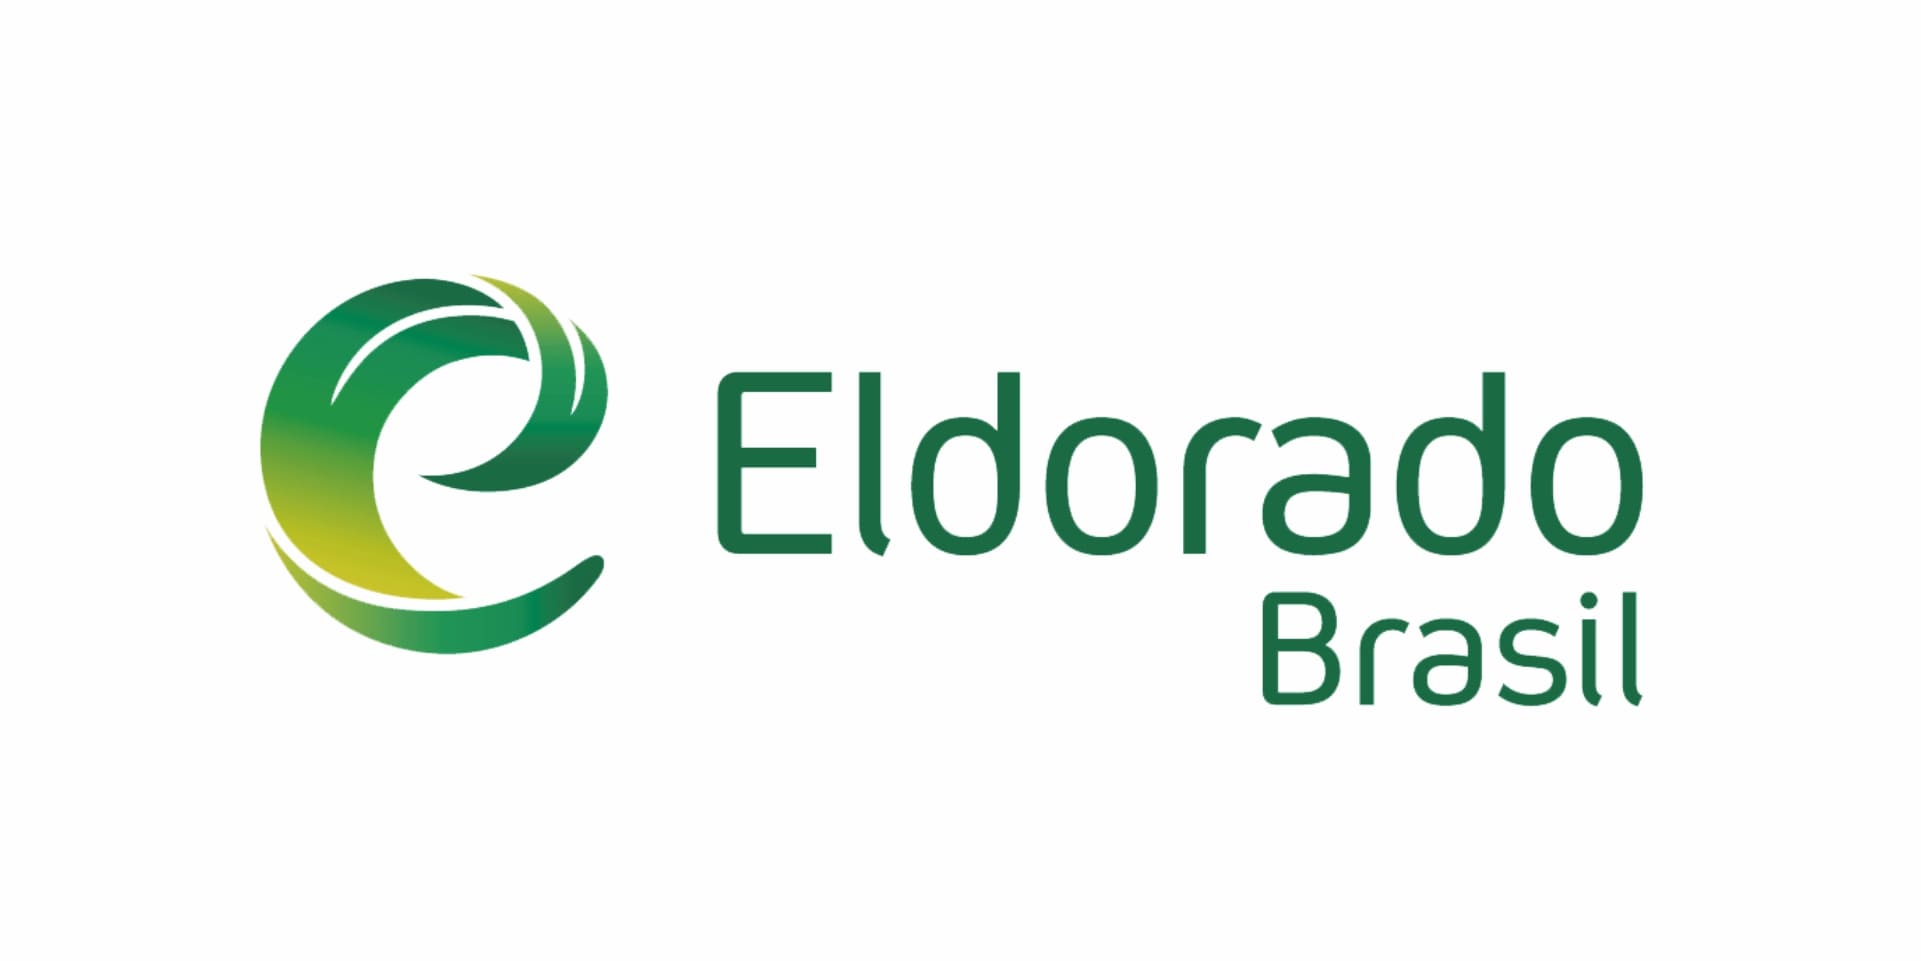 ELDORADO BRASIL